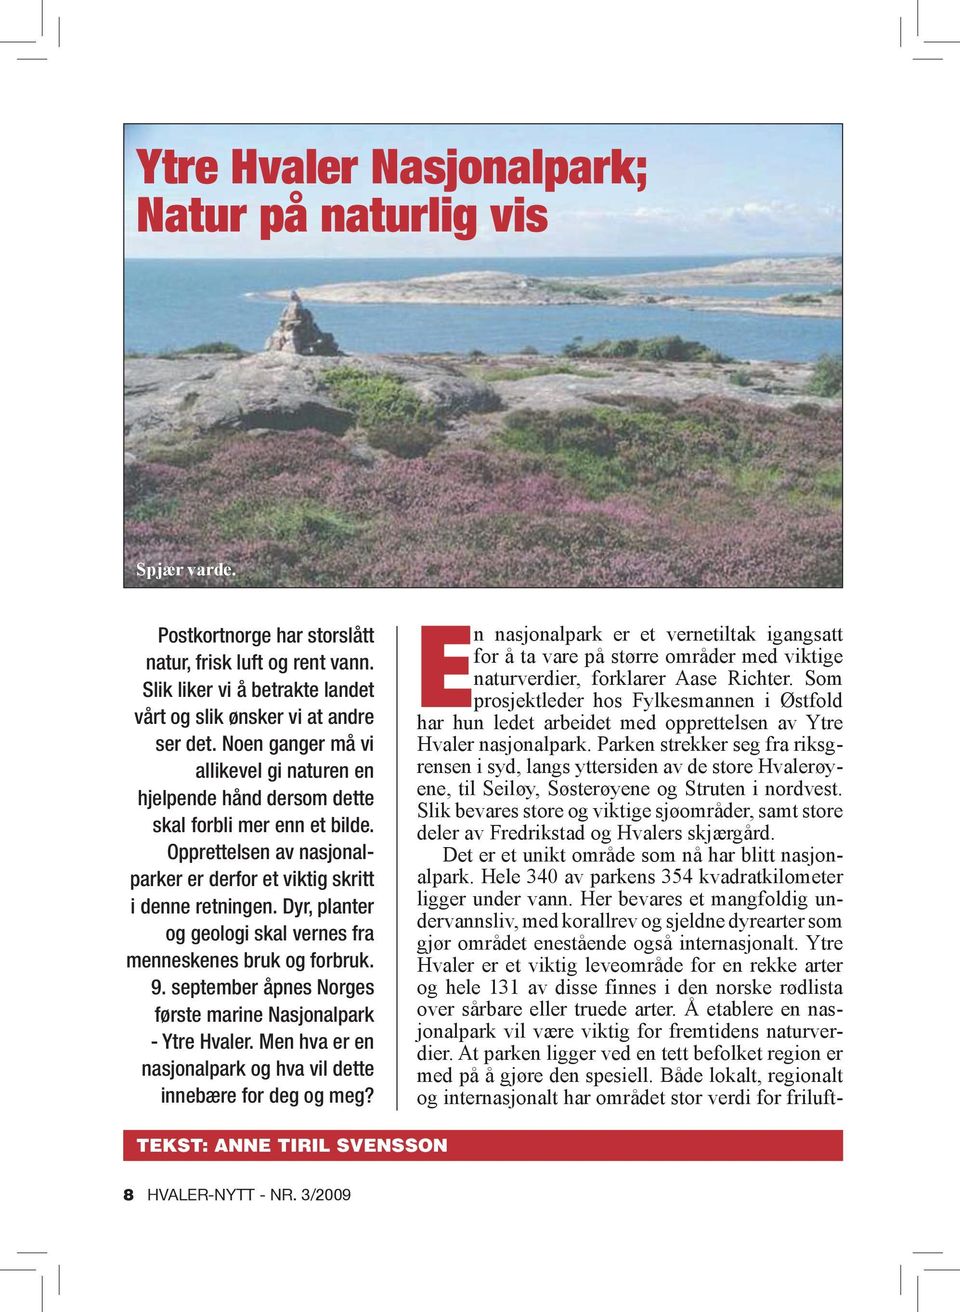 Dyr, planter og geologi skal vernes fra menneskenes bruk og forbruk. 9. september åpnes Norges første marine Nasjonalpark - Ytre Hvaler.